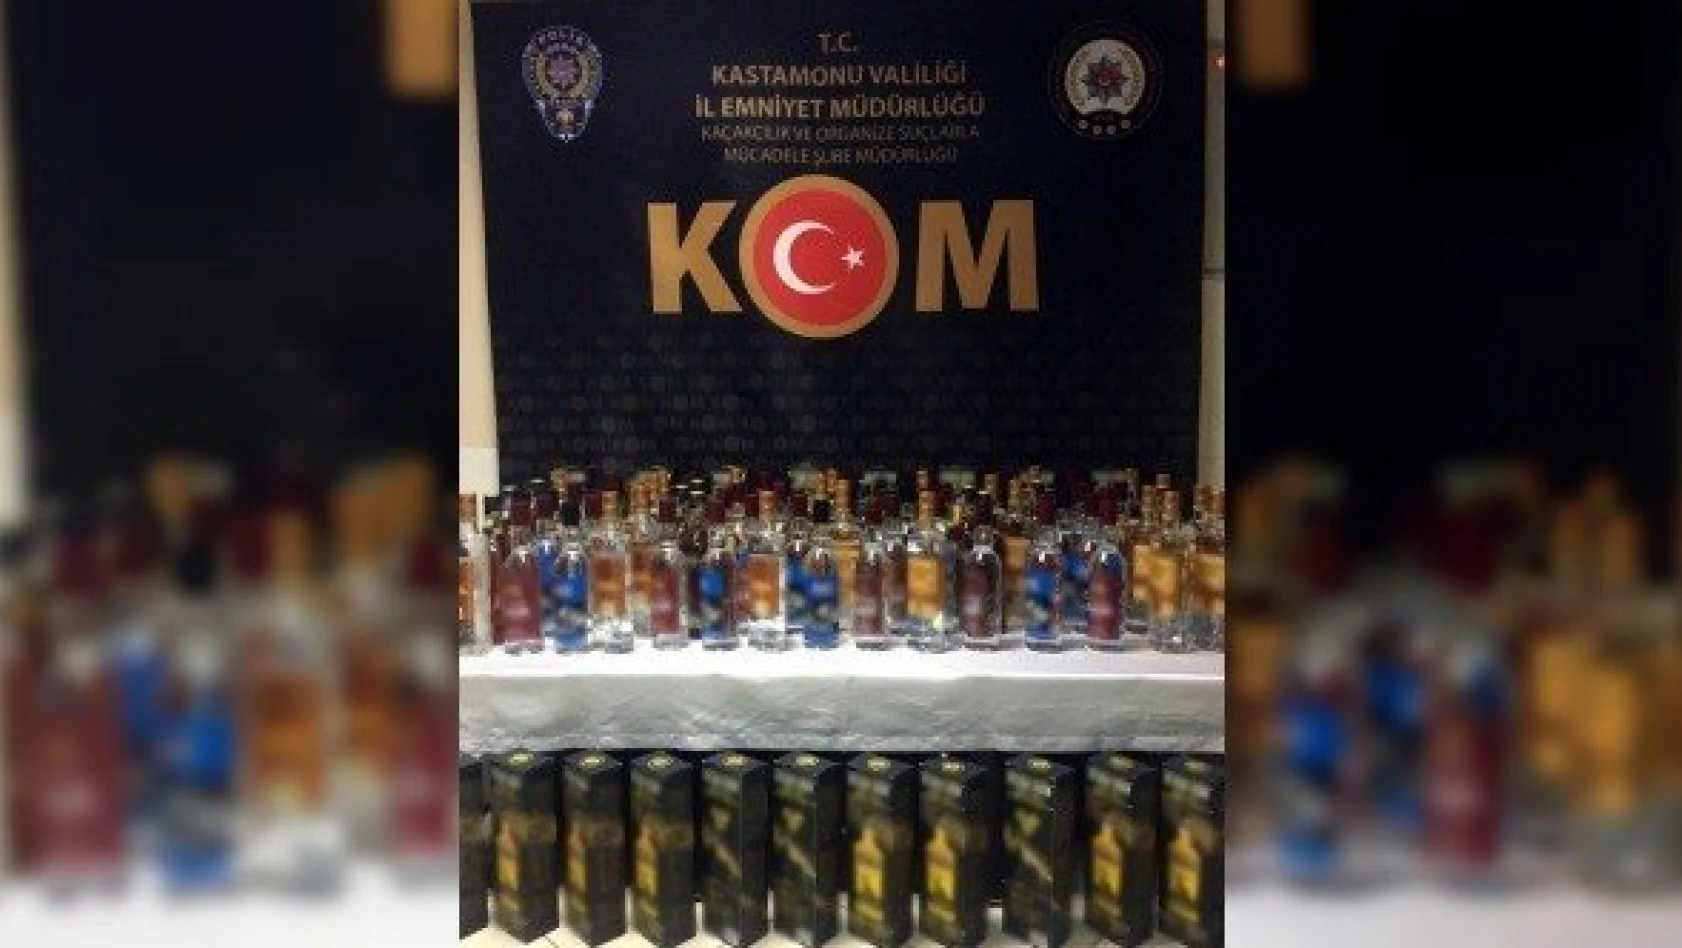 Kastamonu'da 89 şişe kaçak alkol yakalandı: 1 gözaltı